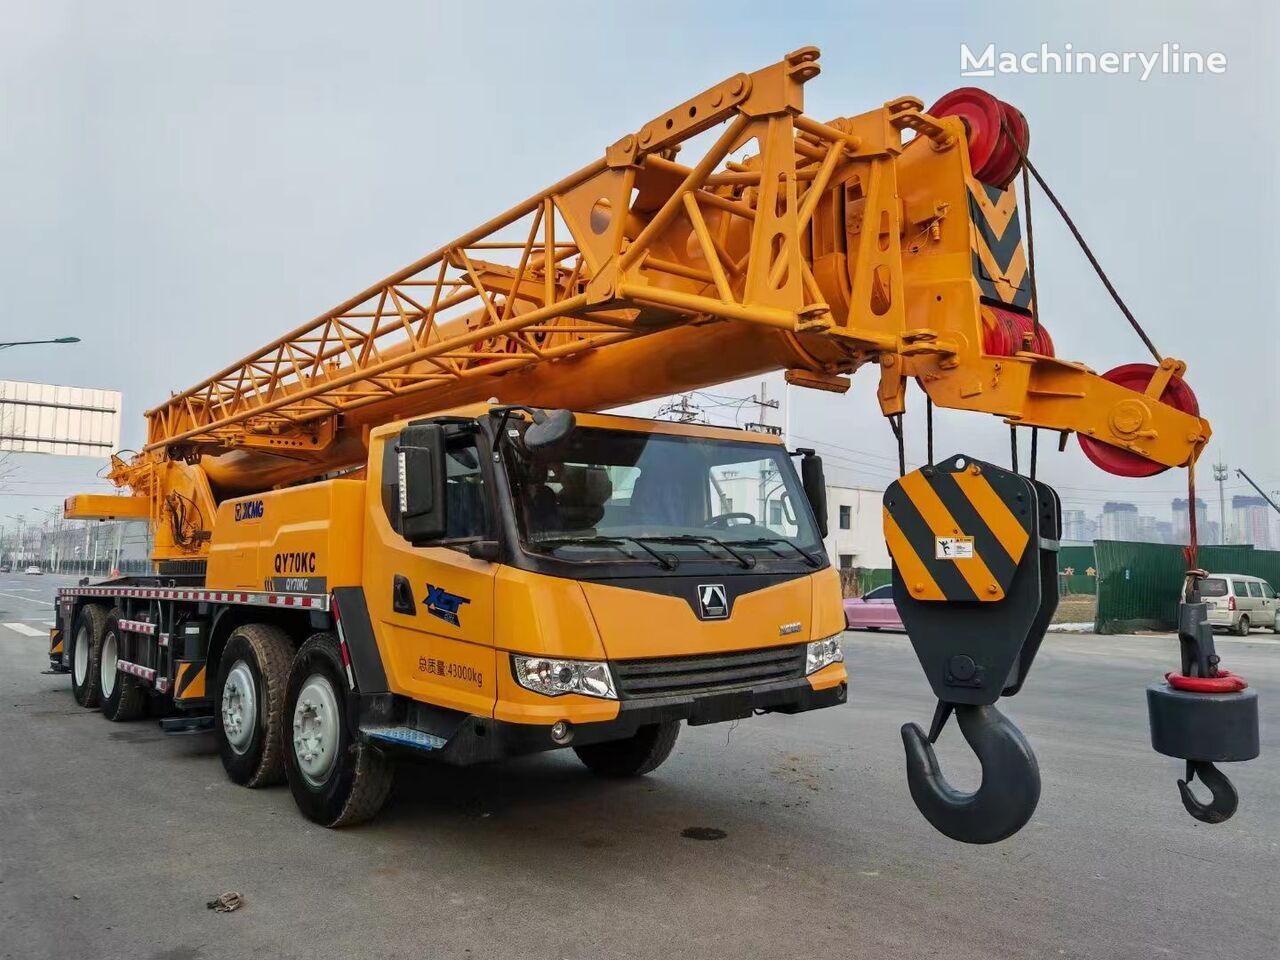 XCMG qy70kc qy70k qy50kc qy100k 100 ton 50 ton 70 ton truck crane ori mobile crane